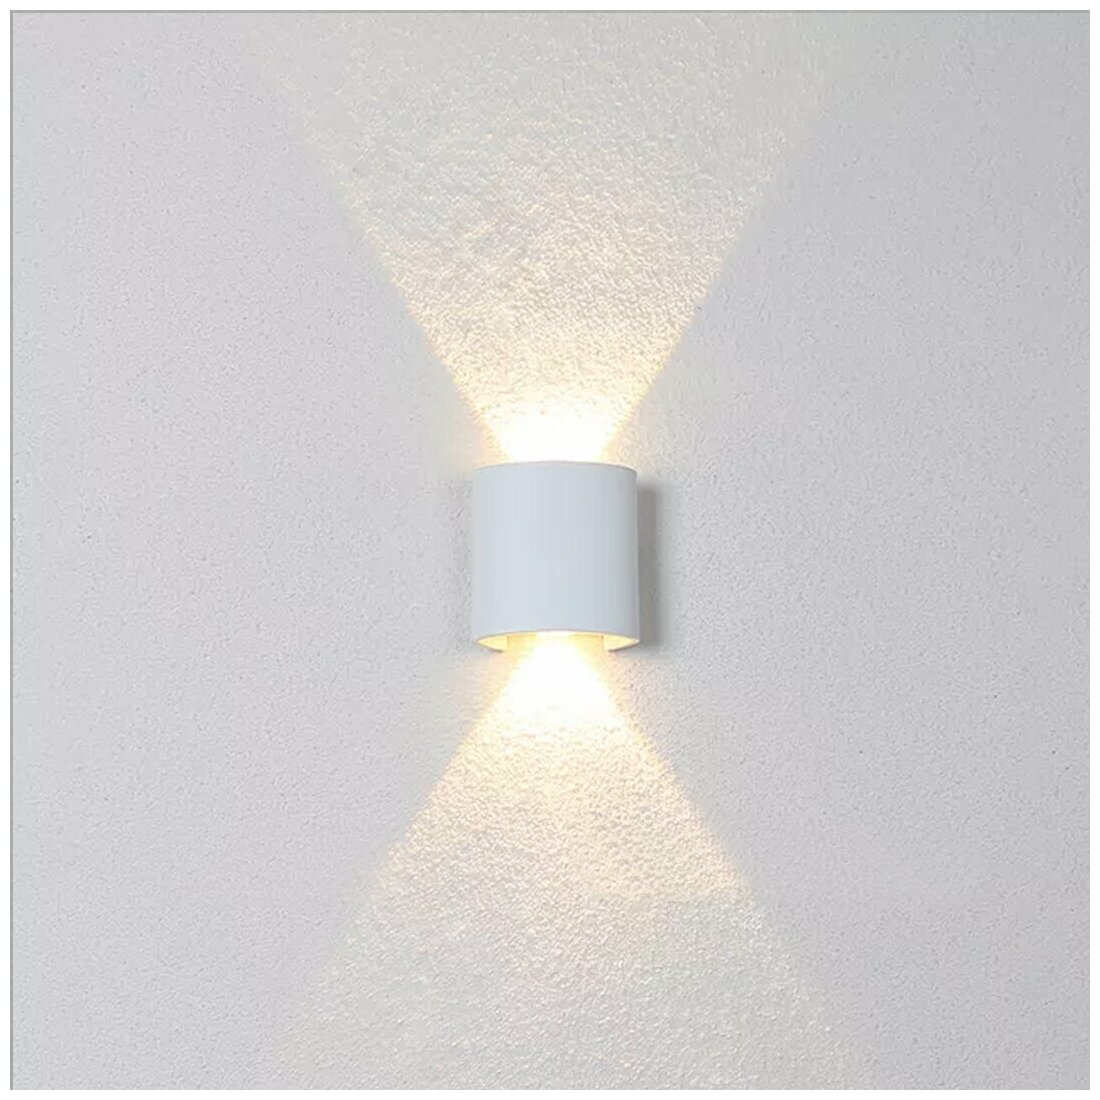 MorningLight Светильник светодиодный LED Настенный светильник бра для дома квартиры Уличный светильник Ночник. Теплый свет